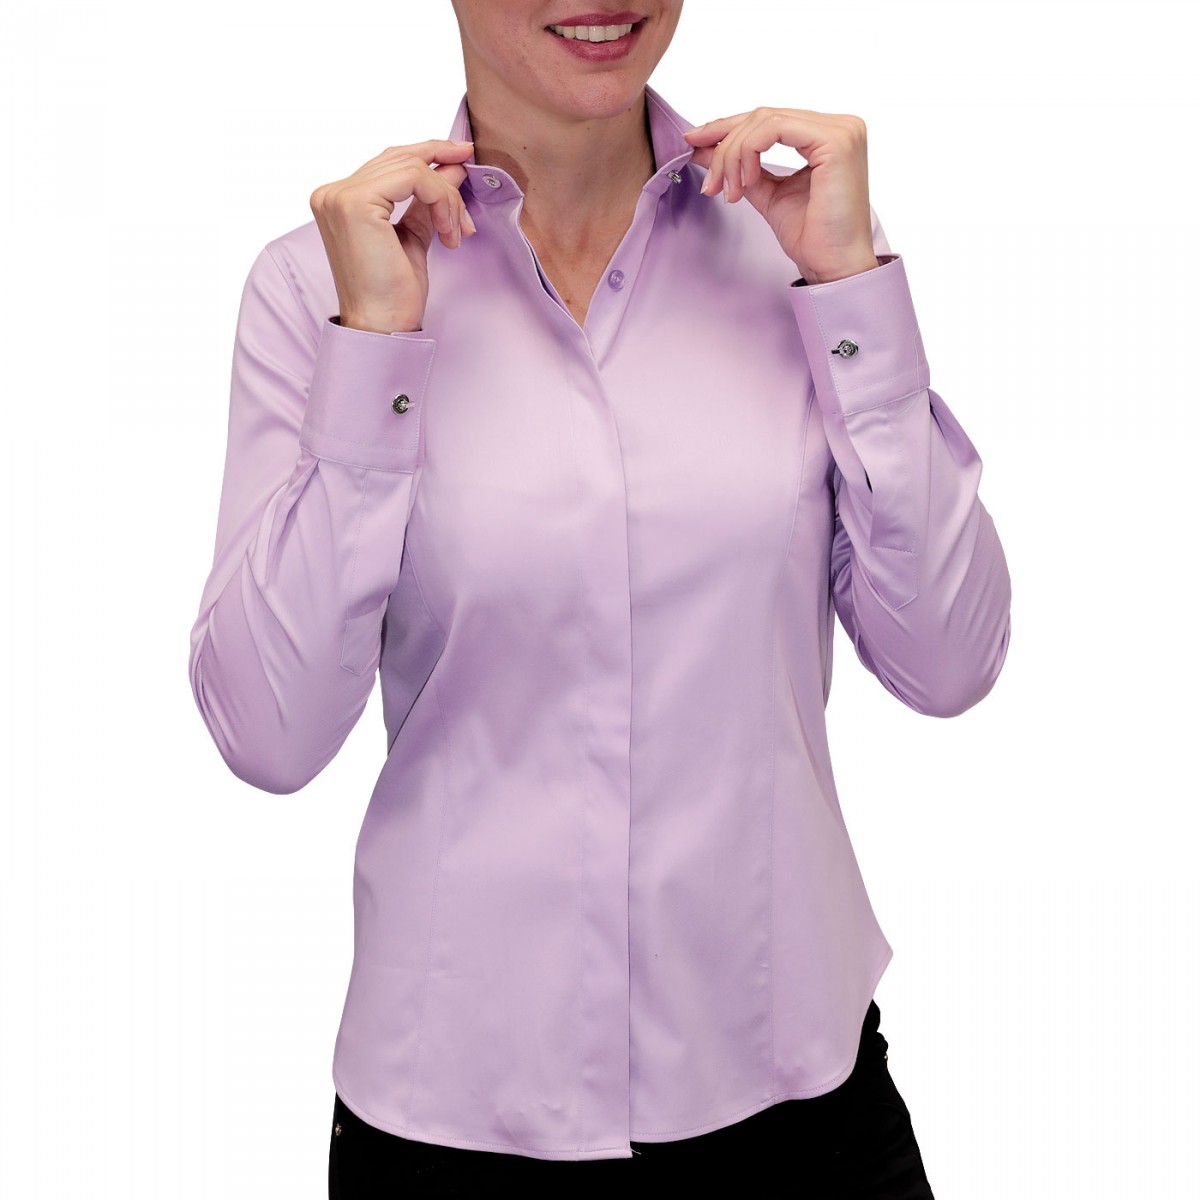 Concentración Atajos Casco camisa mujer puños frances con botones metal tipo gemelos